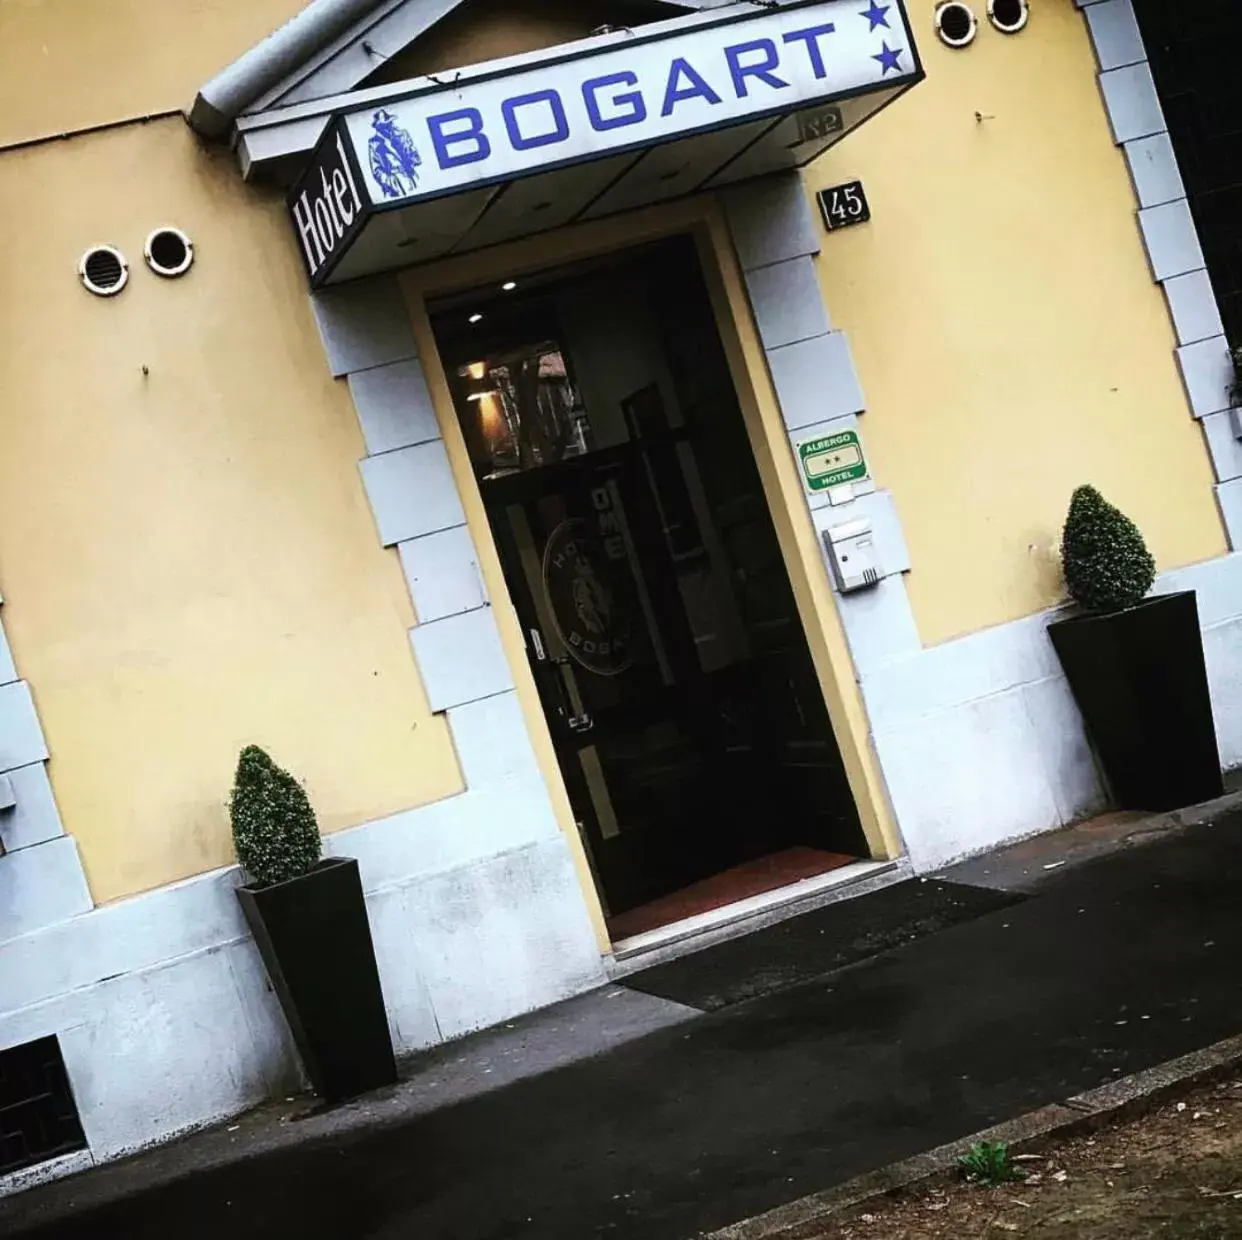 Hotel Bogart